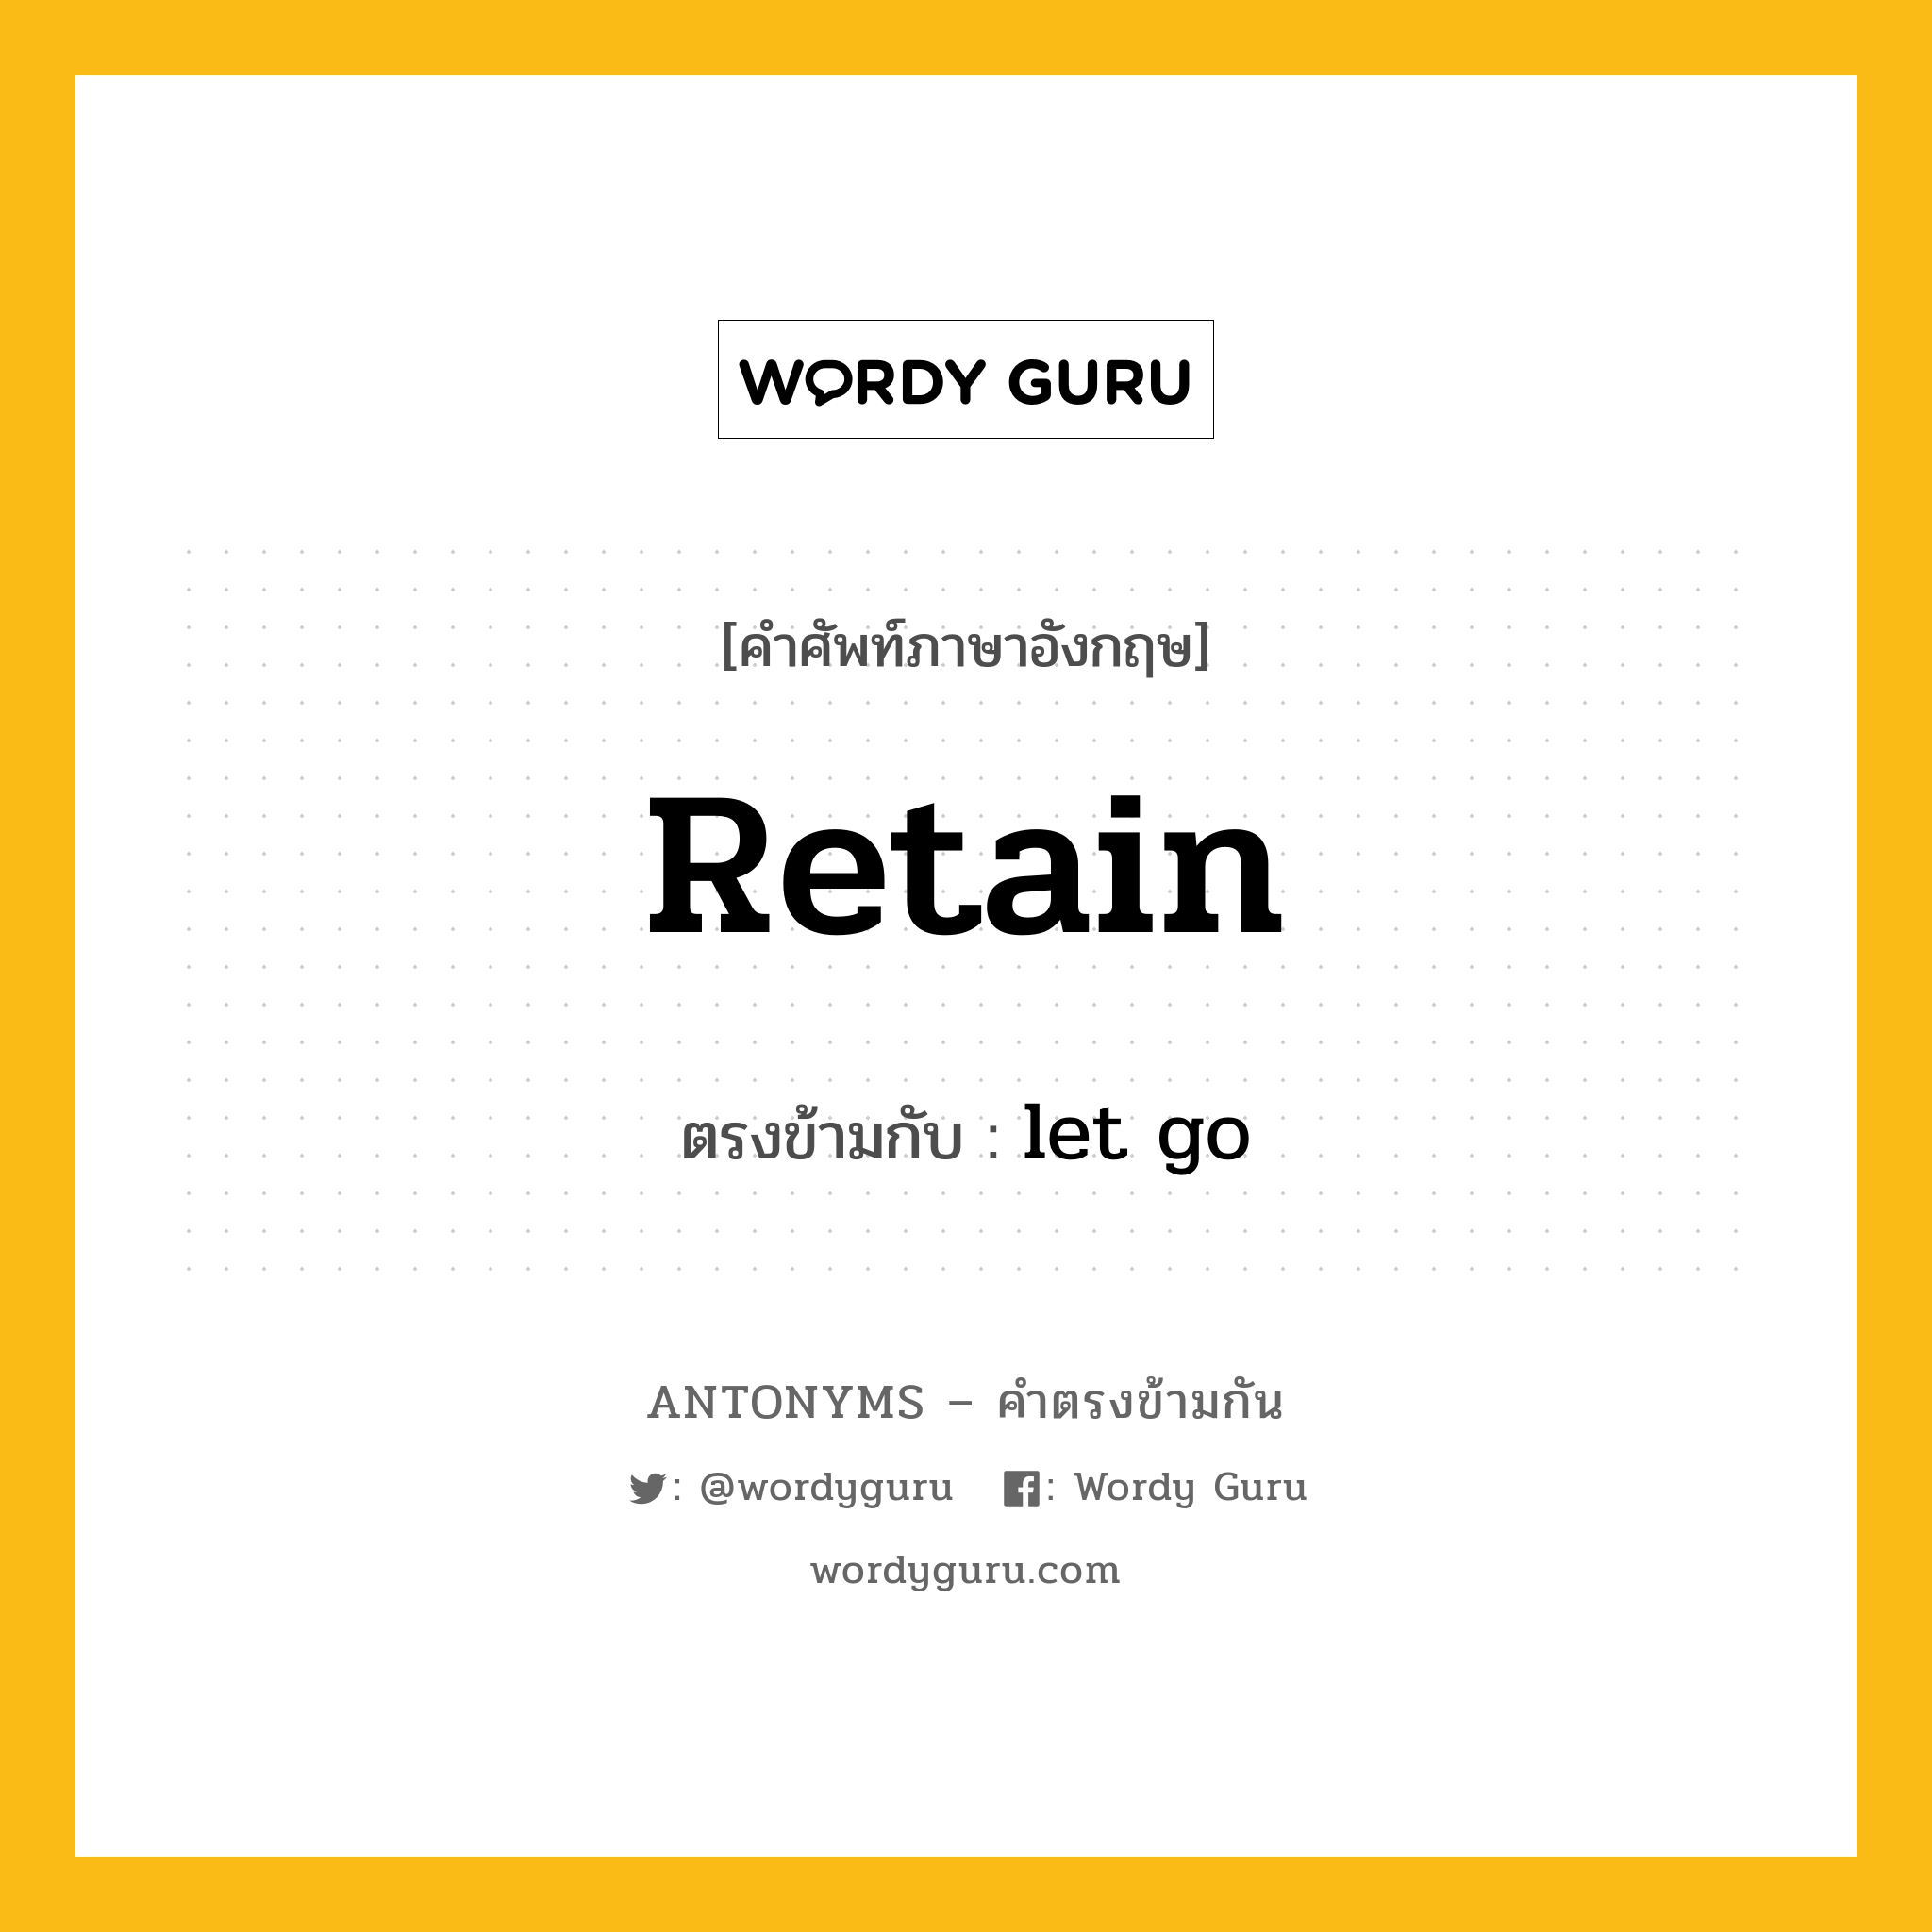 retain เป็นคำตรงข้ามกับคำไหนบ้าง? เป็นหนึ่งในคำตรงข้ามของ let go, คำศัพท์ภาษาอังกฤษ retain ตรงข้ามกับ let go หมวด let go